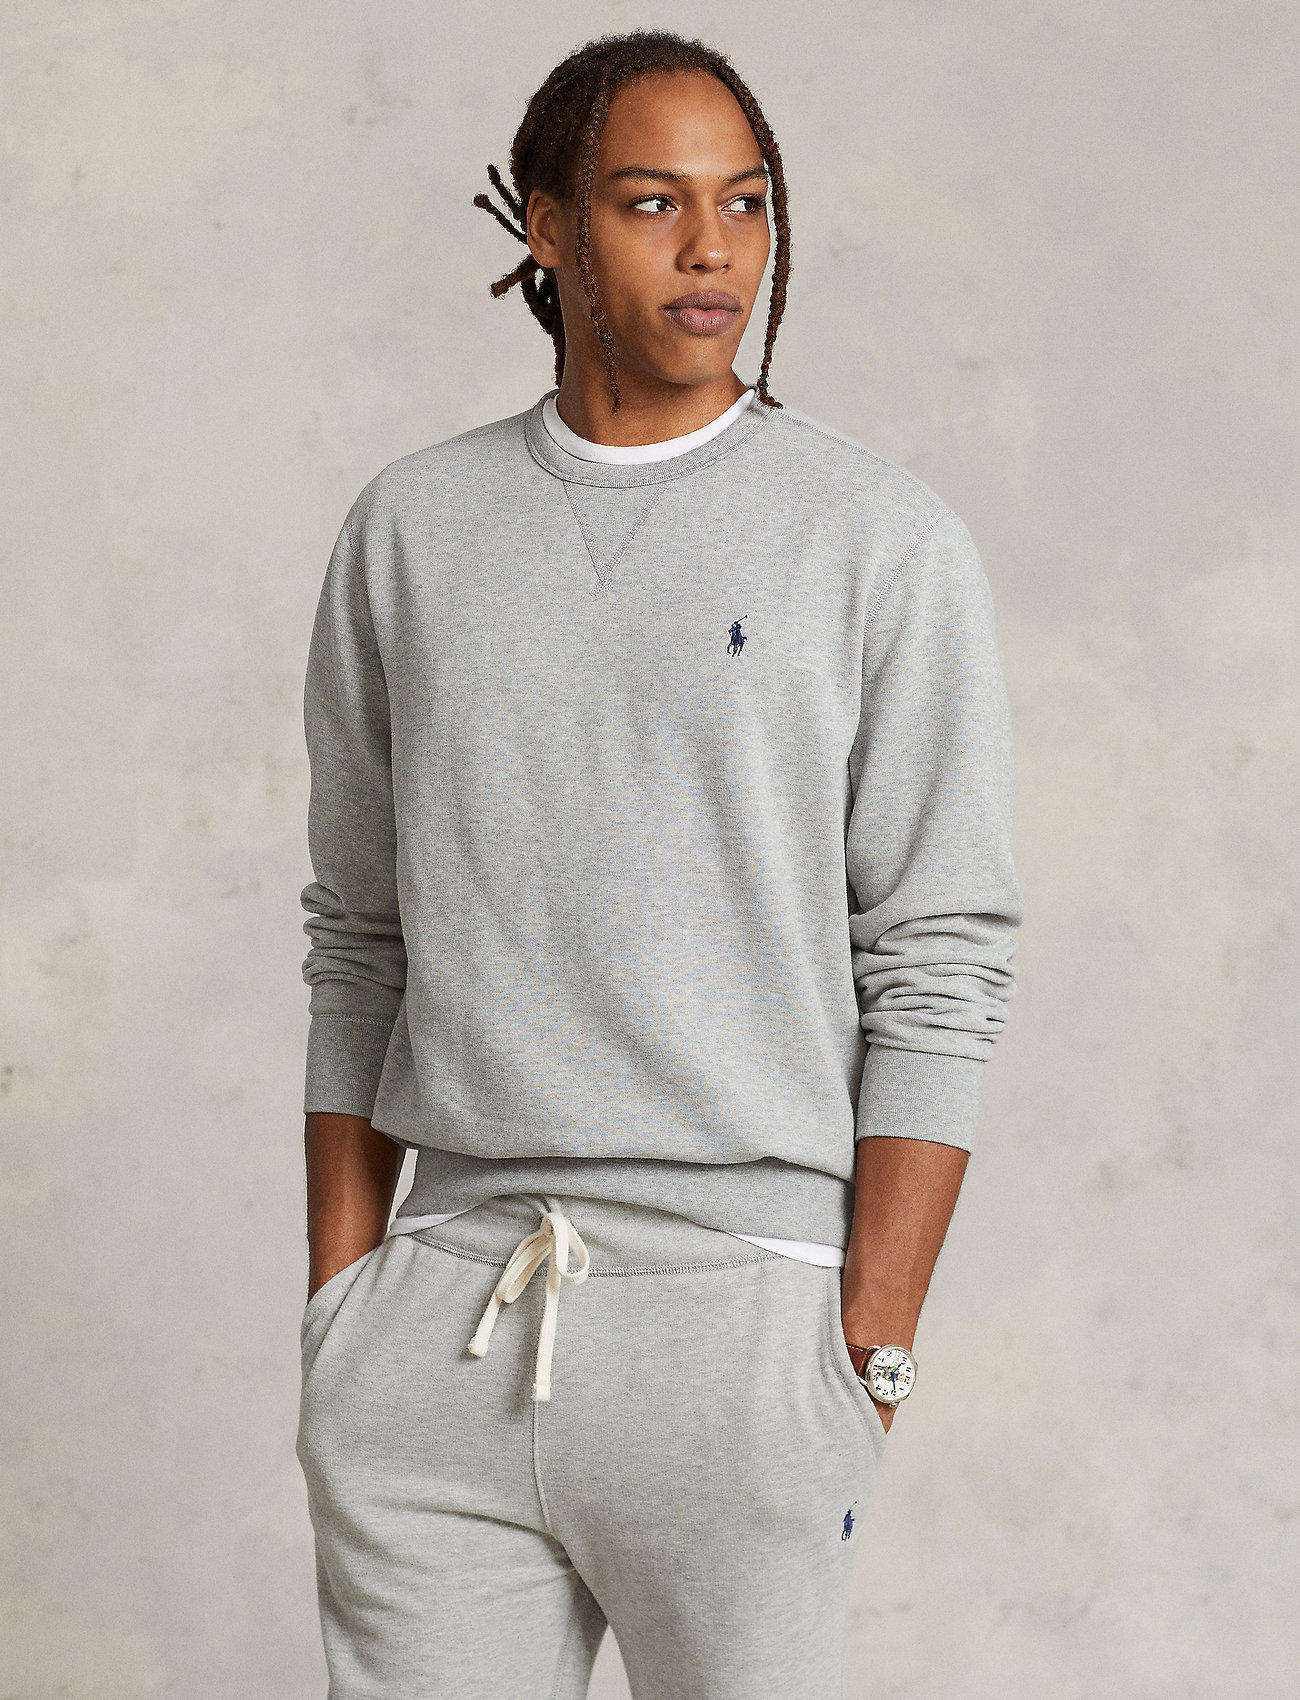 Polo Ralph Lauren - The RL Fleece Sweatshirt - swetry - andover heather - 0